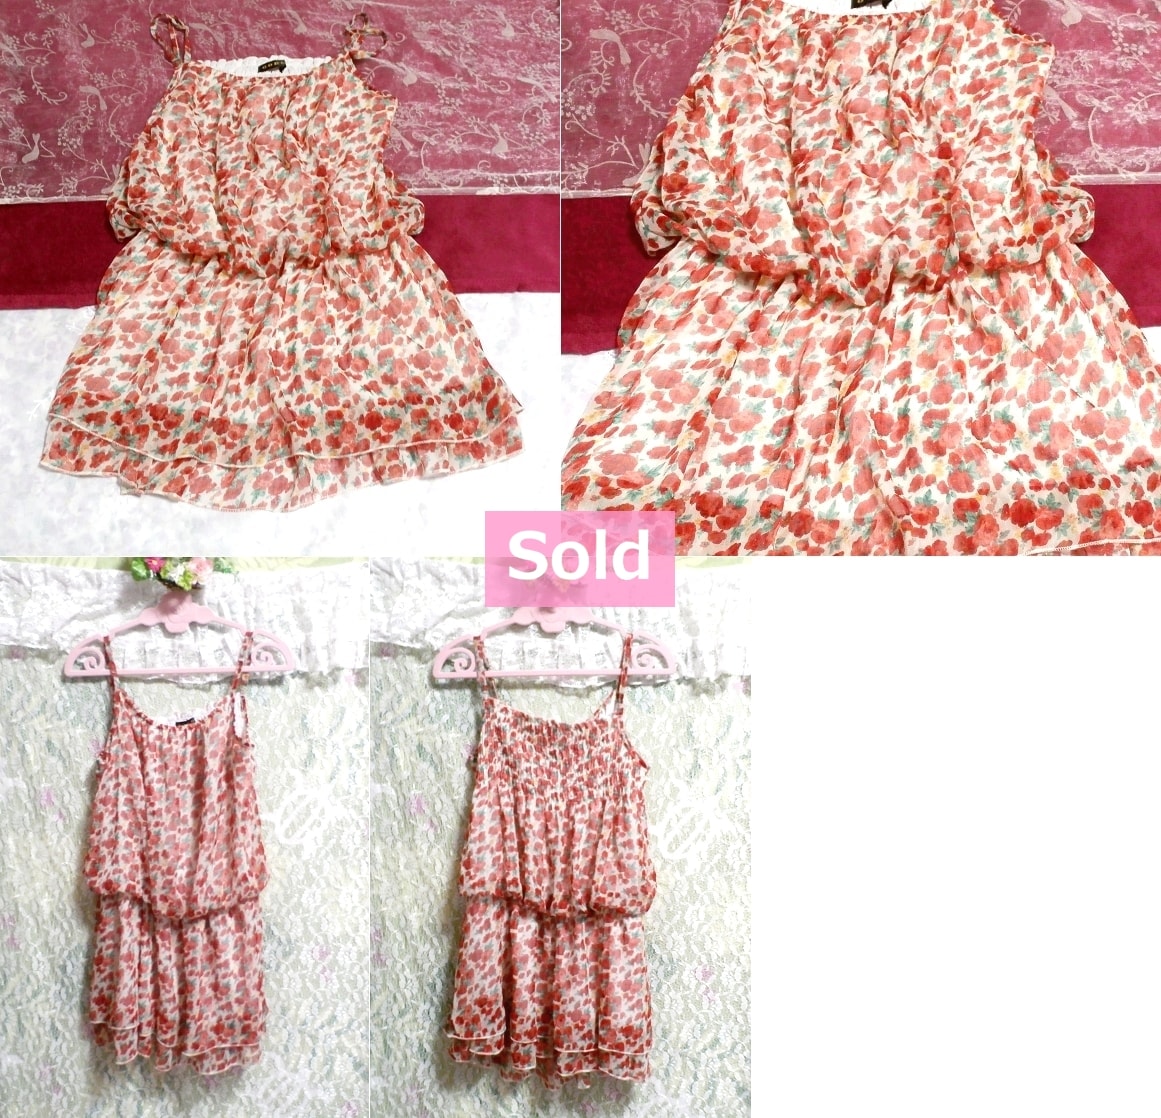 赤ピンク花柄キャミソールシフォンワンピース/ネグリジェ Red pink floral camisole chiffon onepiece/negligee